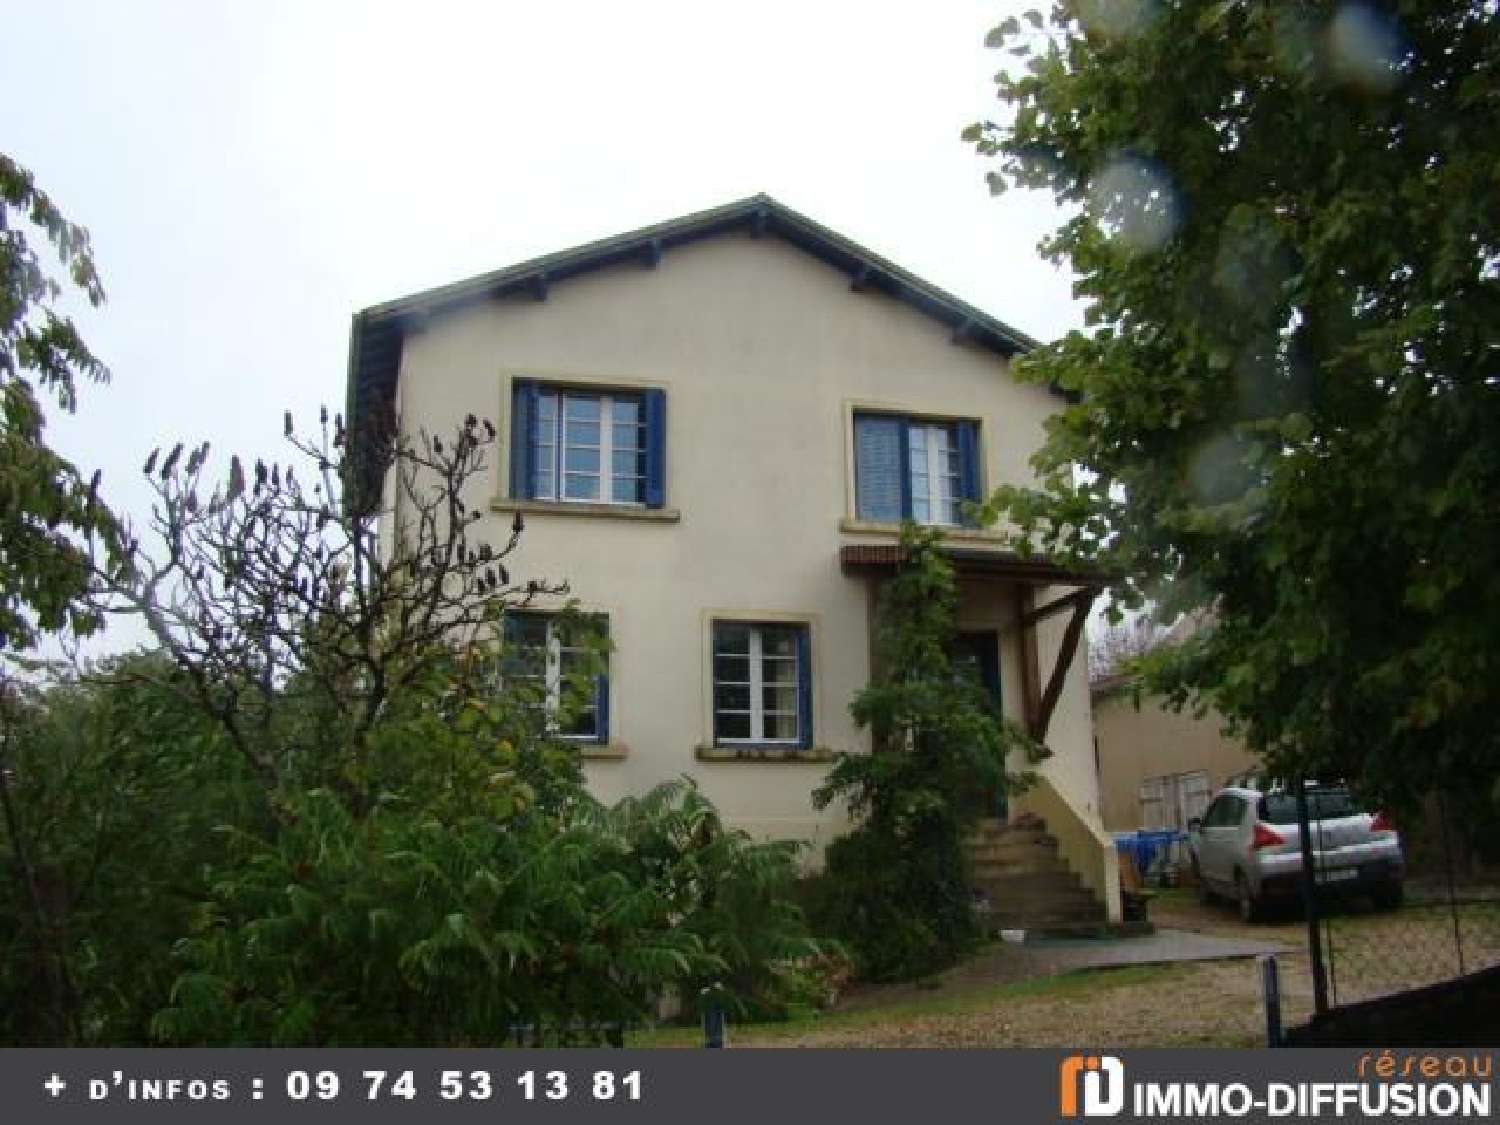  for sale house Dompierre-sur-Besbre Allier 1